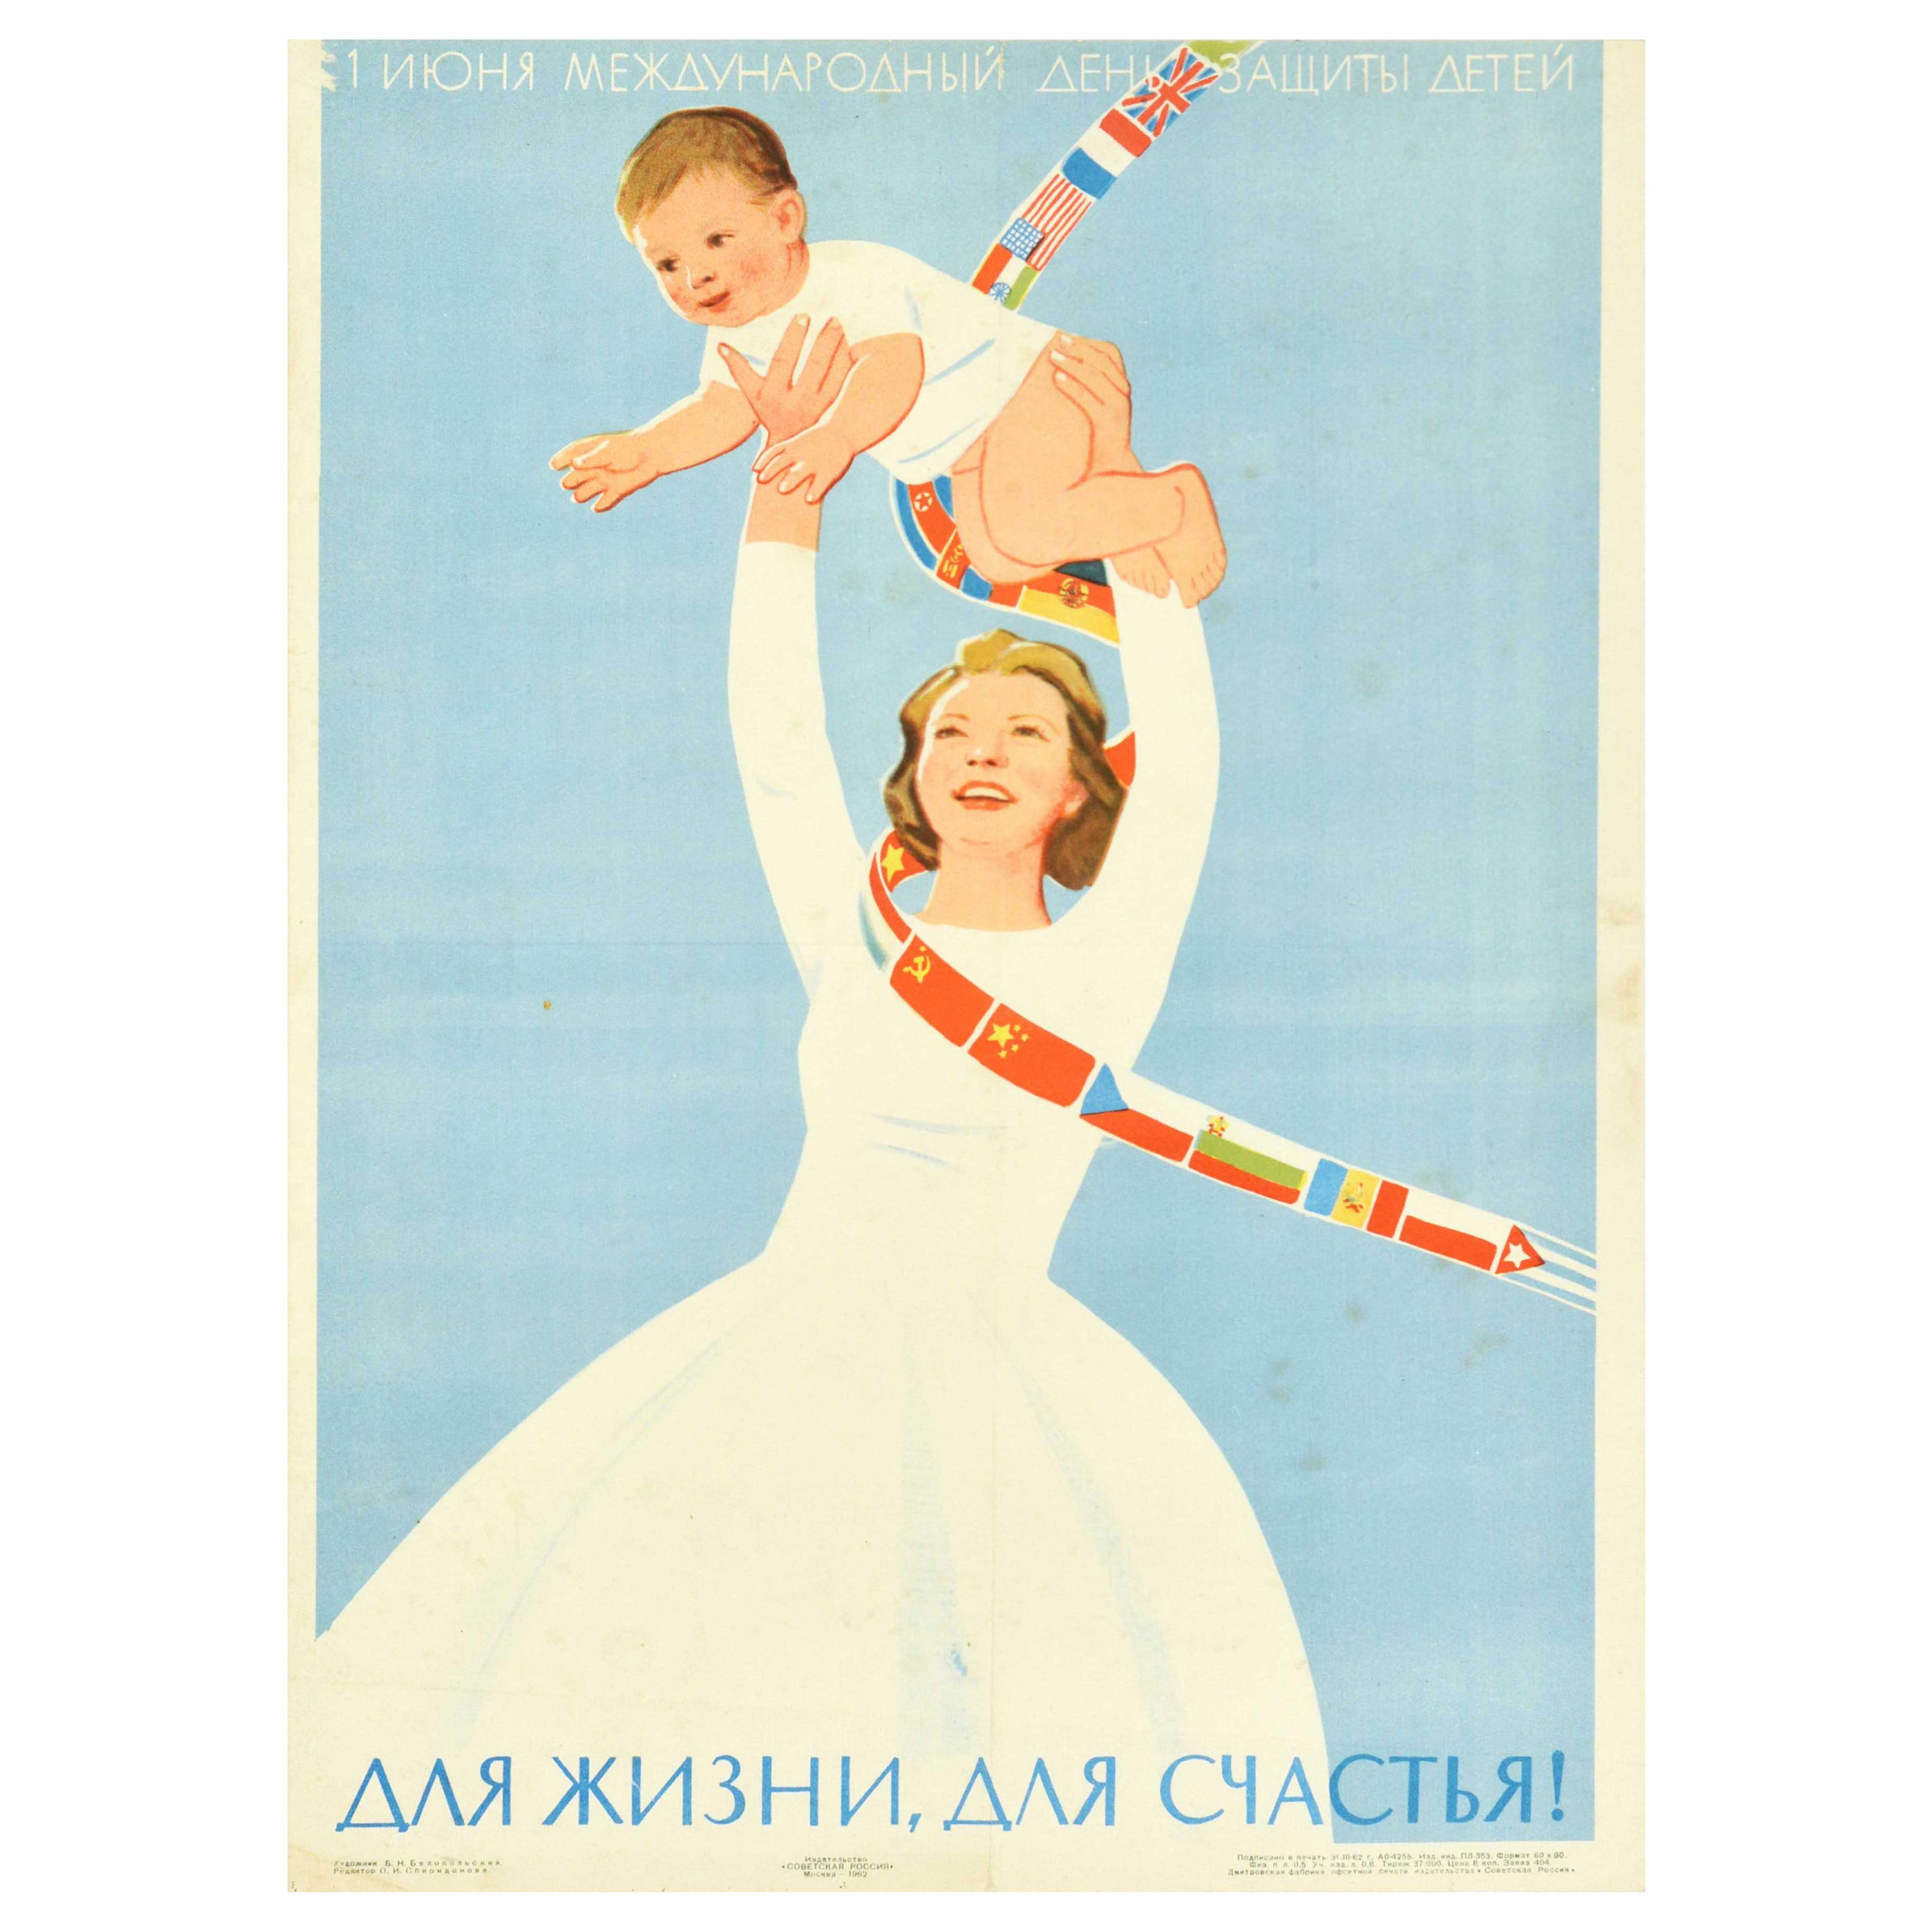 Affiche rétro originale, Journée des enfants de l'International Children's Day For Life For Happiness, URSS